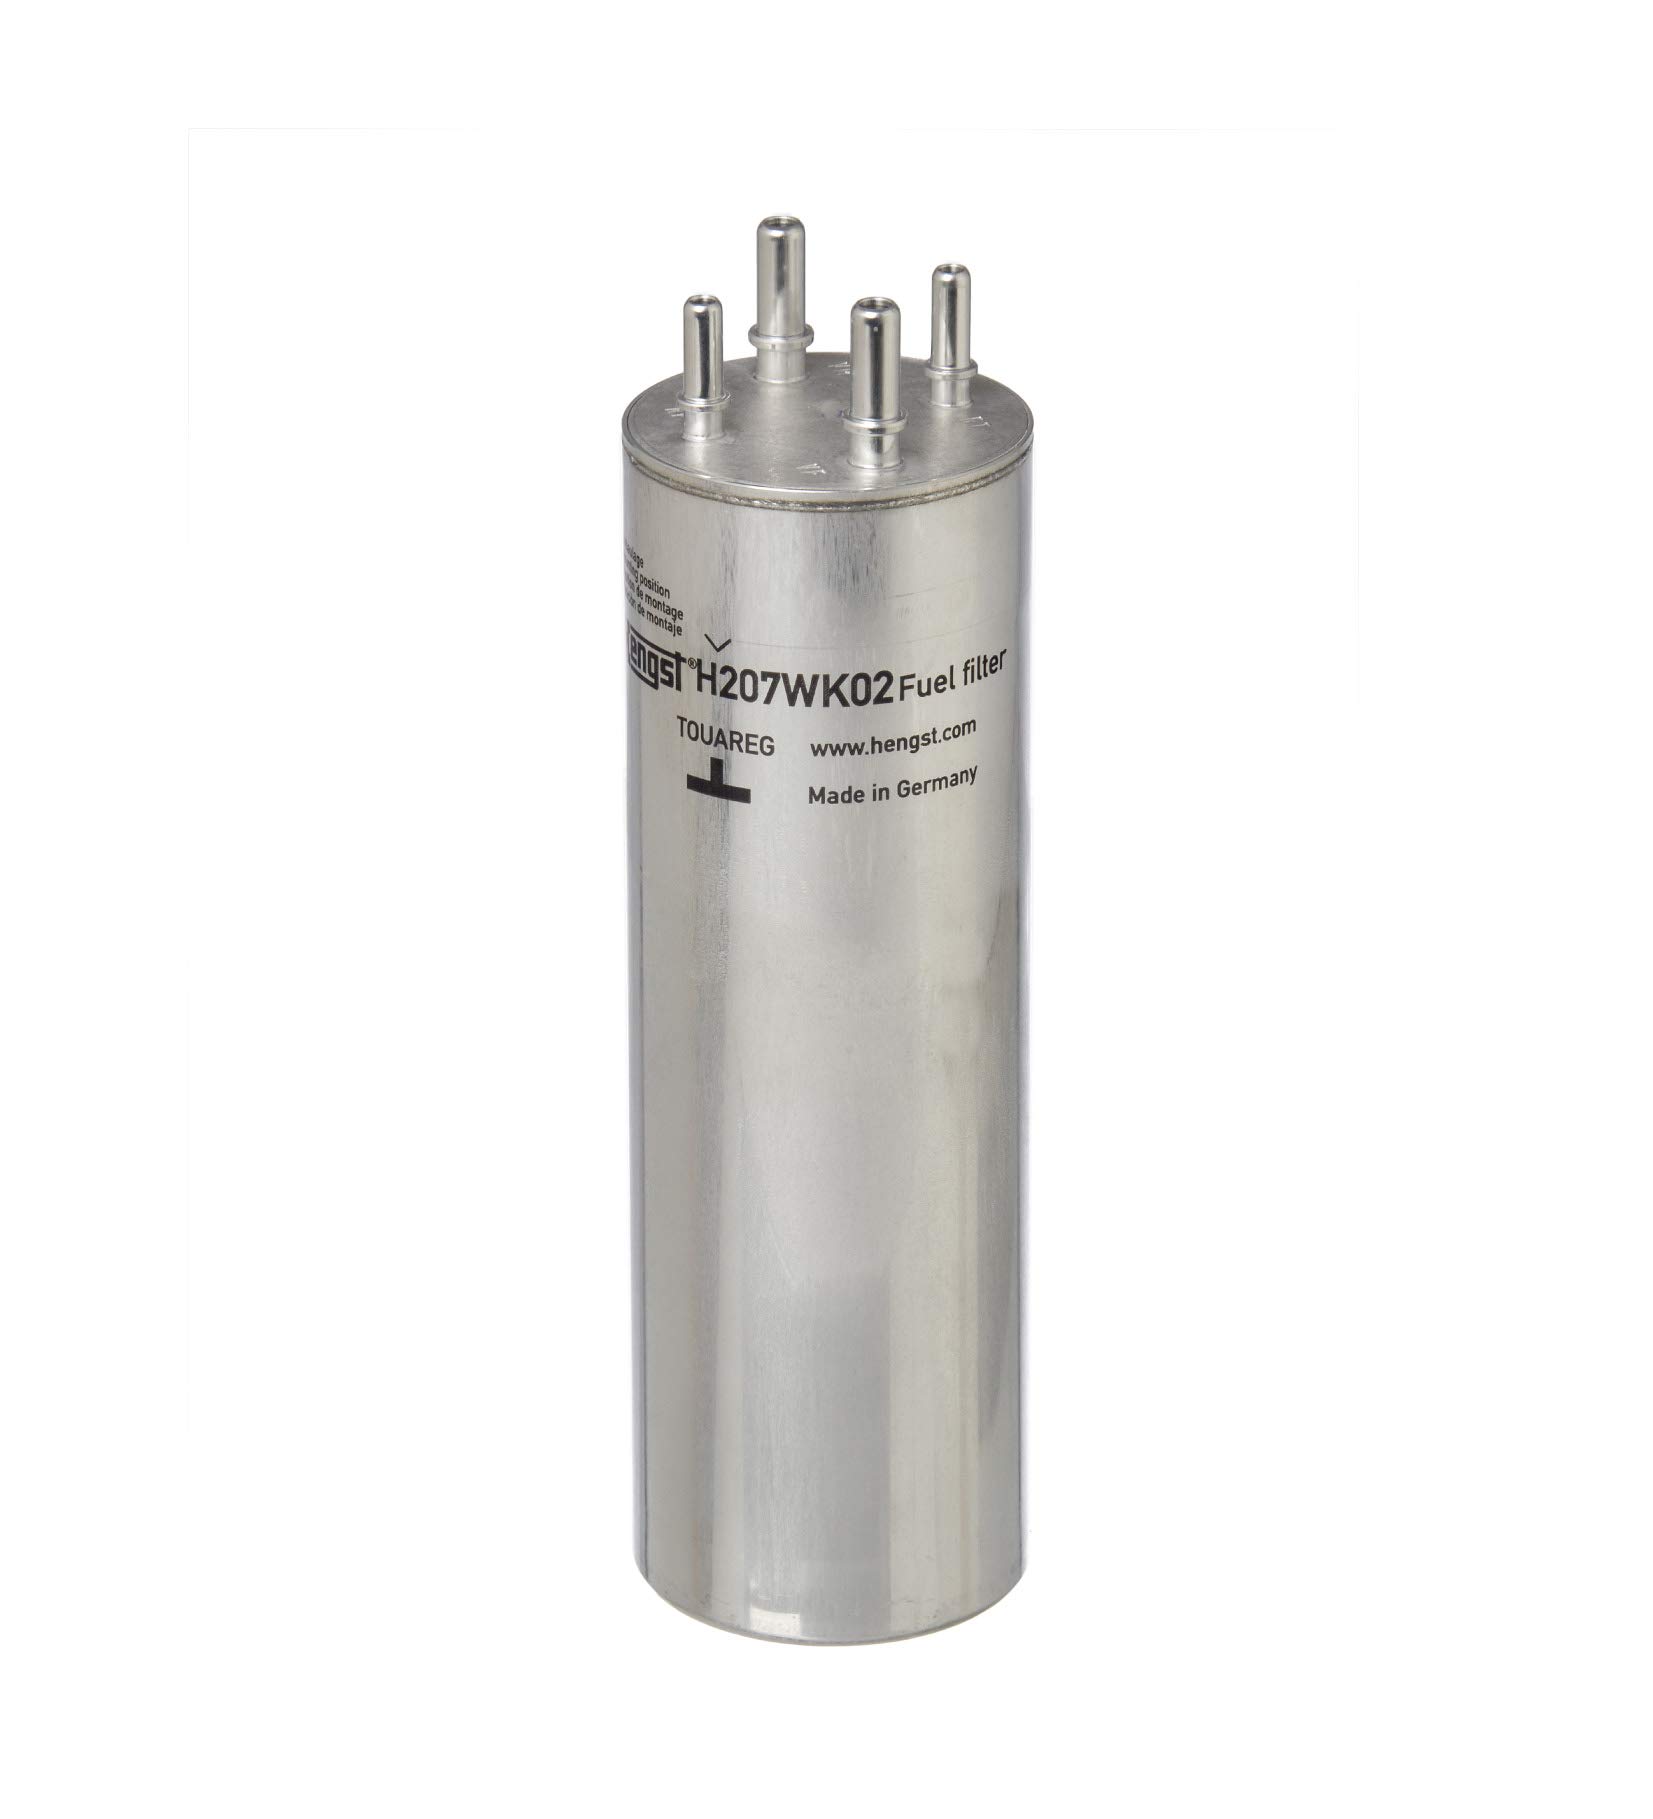 HENGST Kraftstoff-Leitungsfilter Type H207WK02 - Kraftstofffilter für PKW - Filter für Kraftstoff, Filter für Autos von Hengst